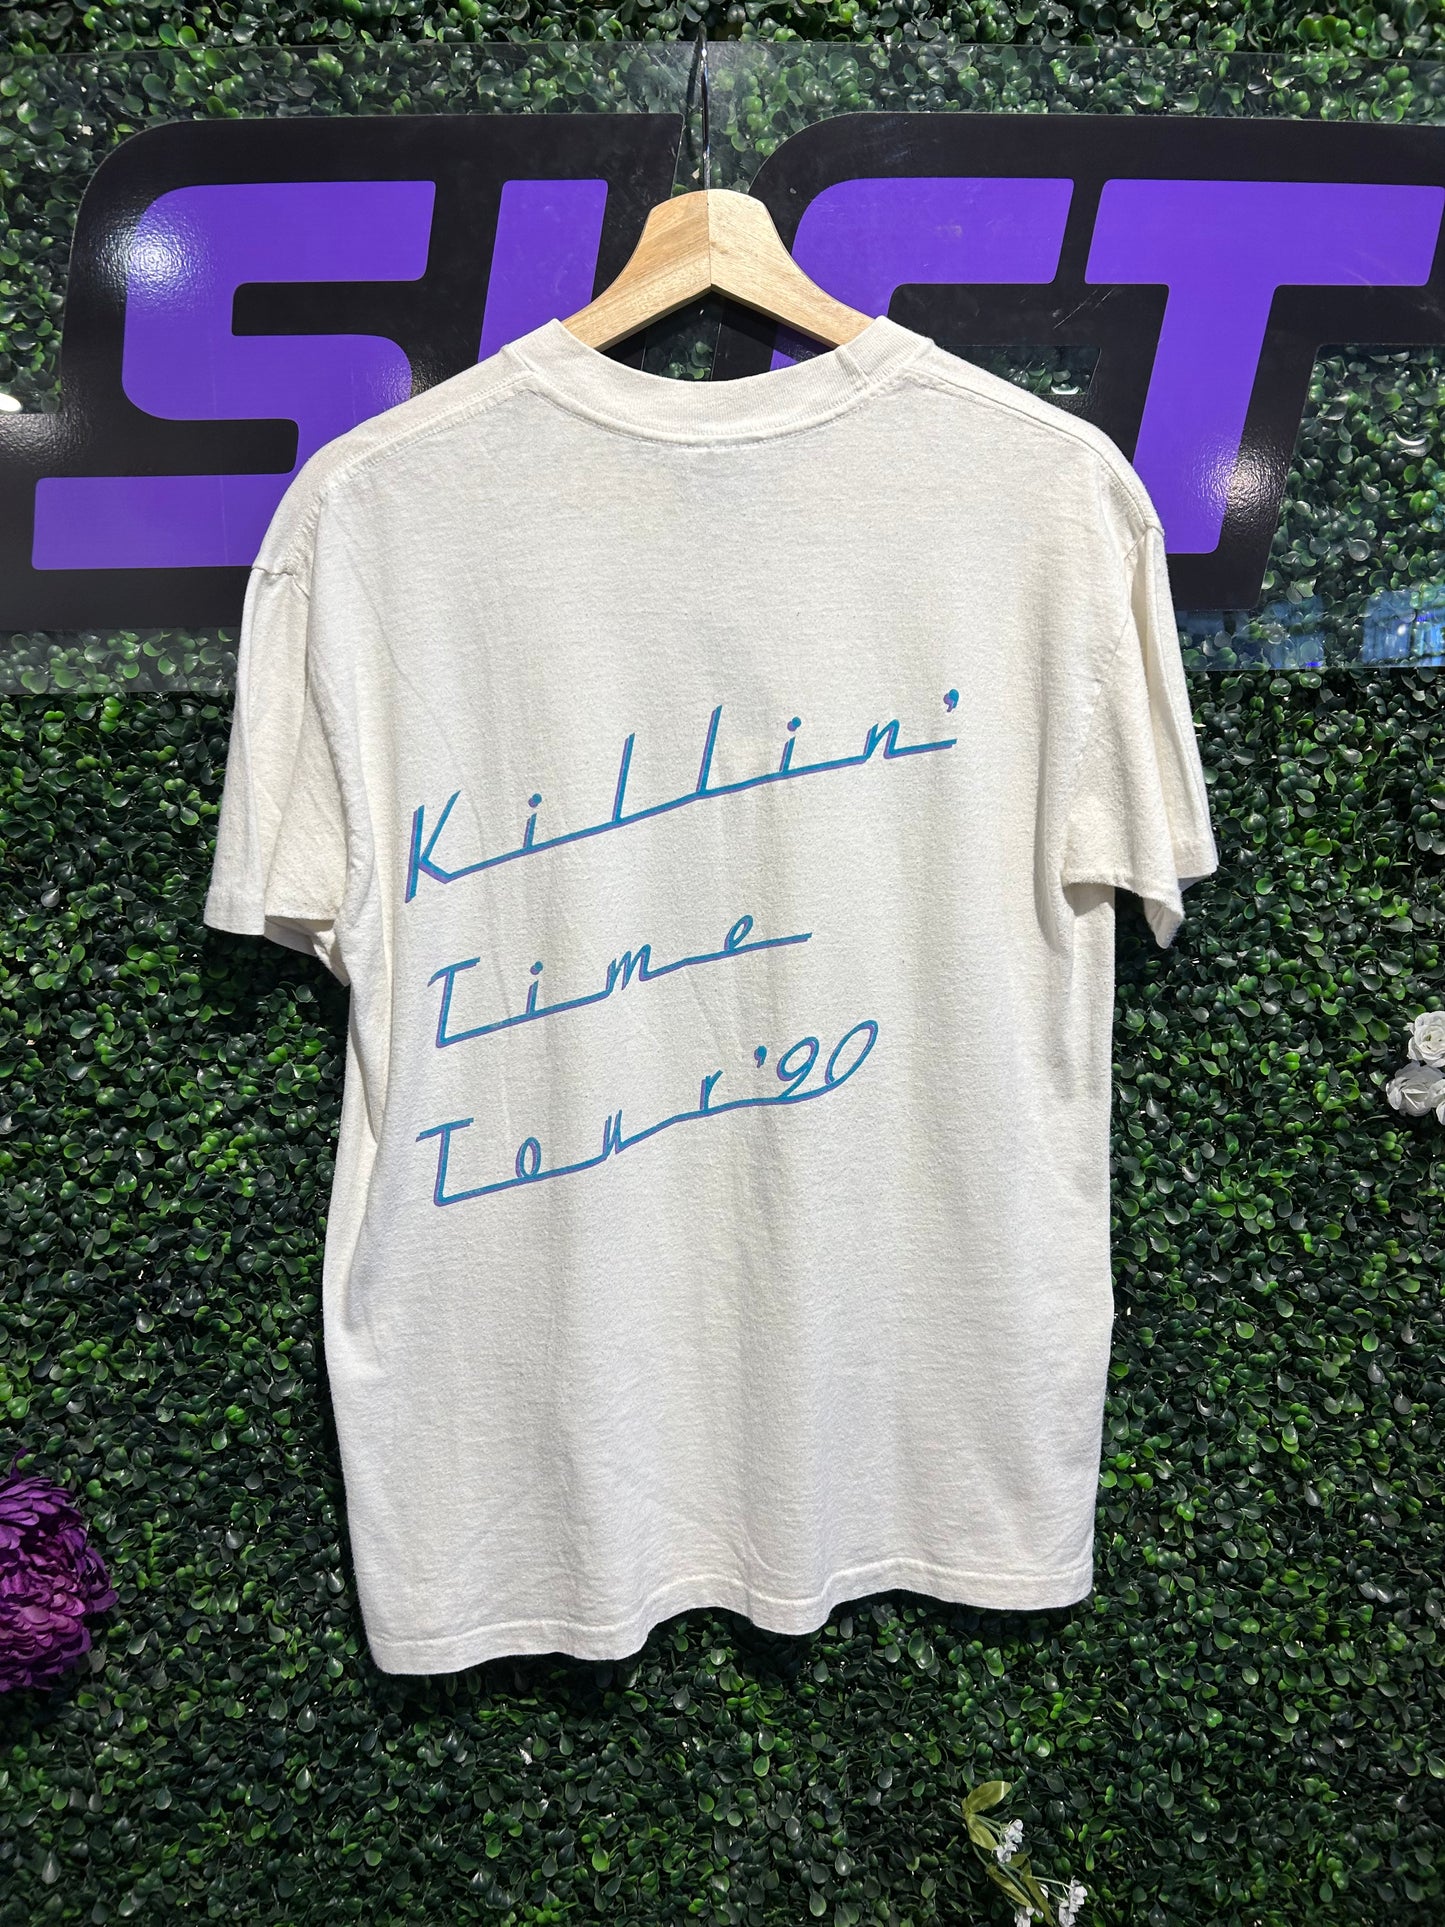 1990 Clint Black Killin Time Tour T-Shirt. Size M/L